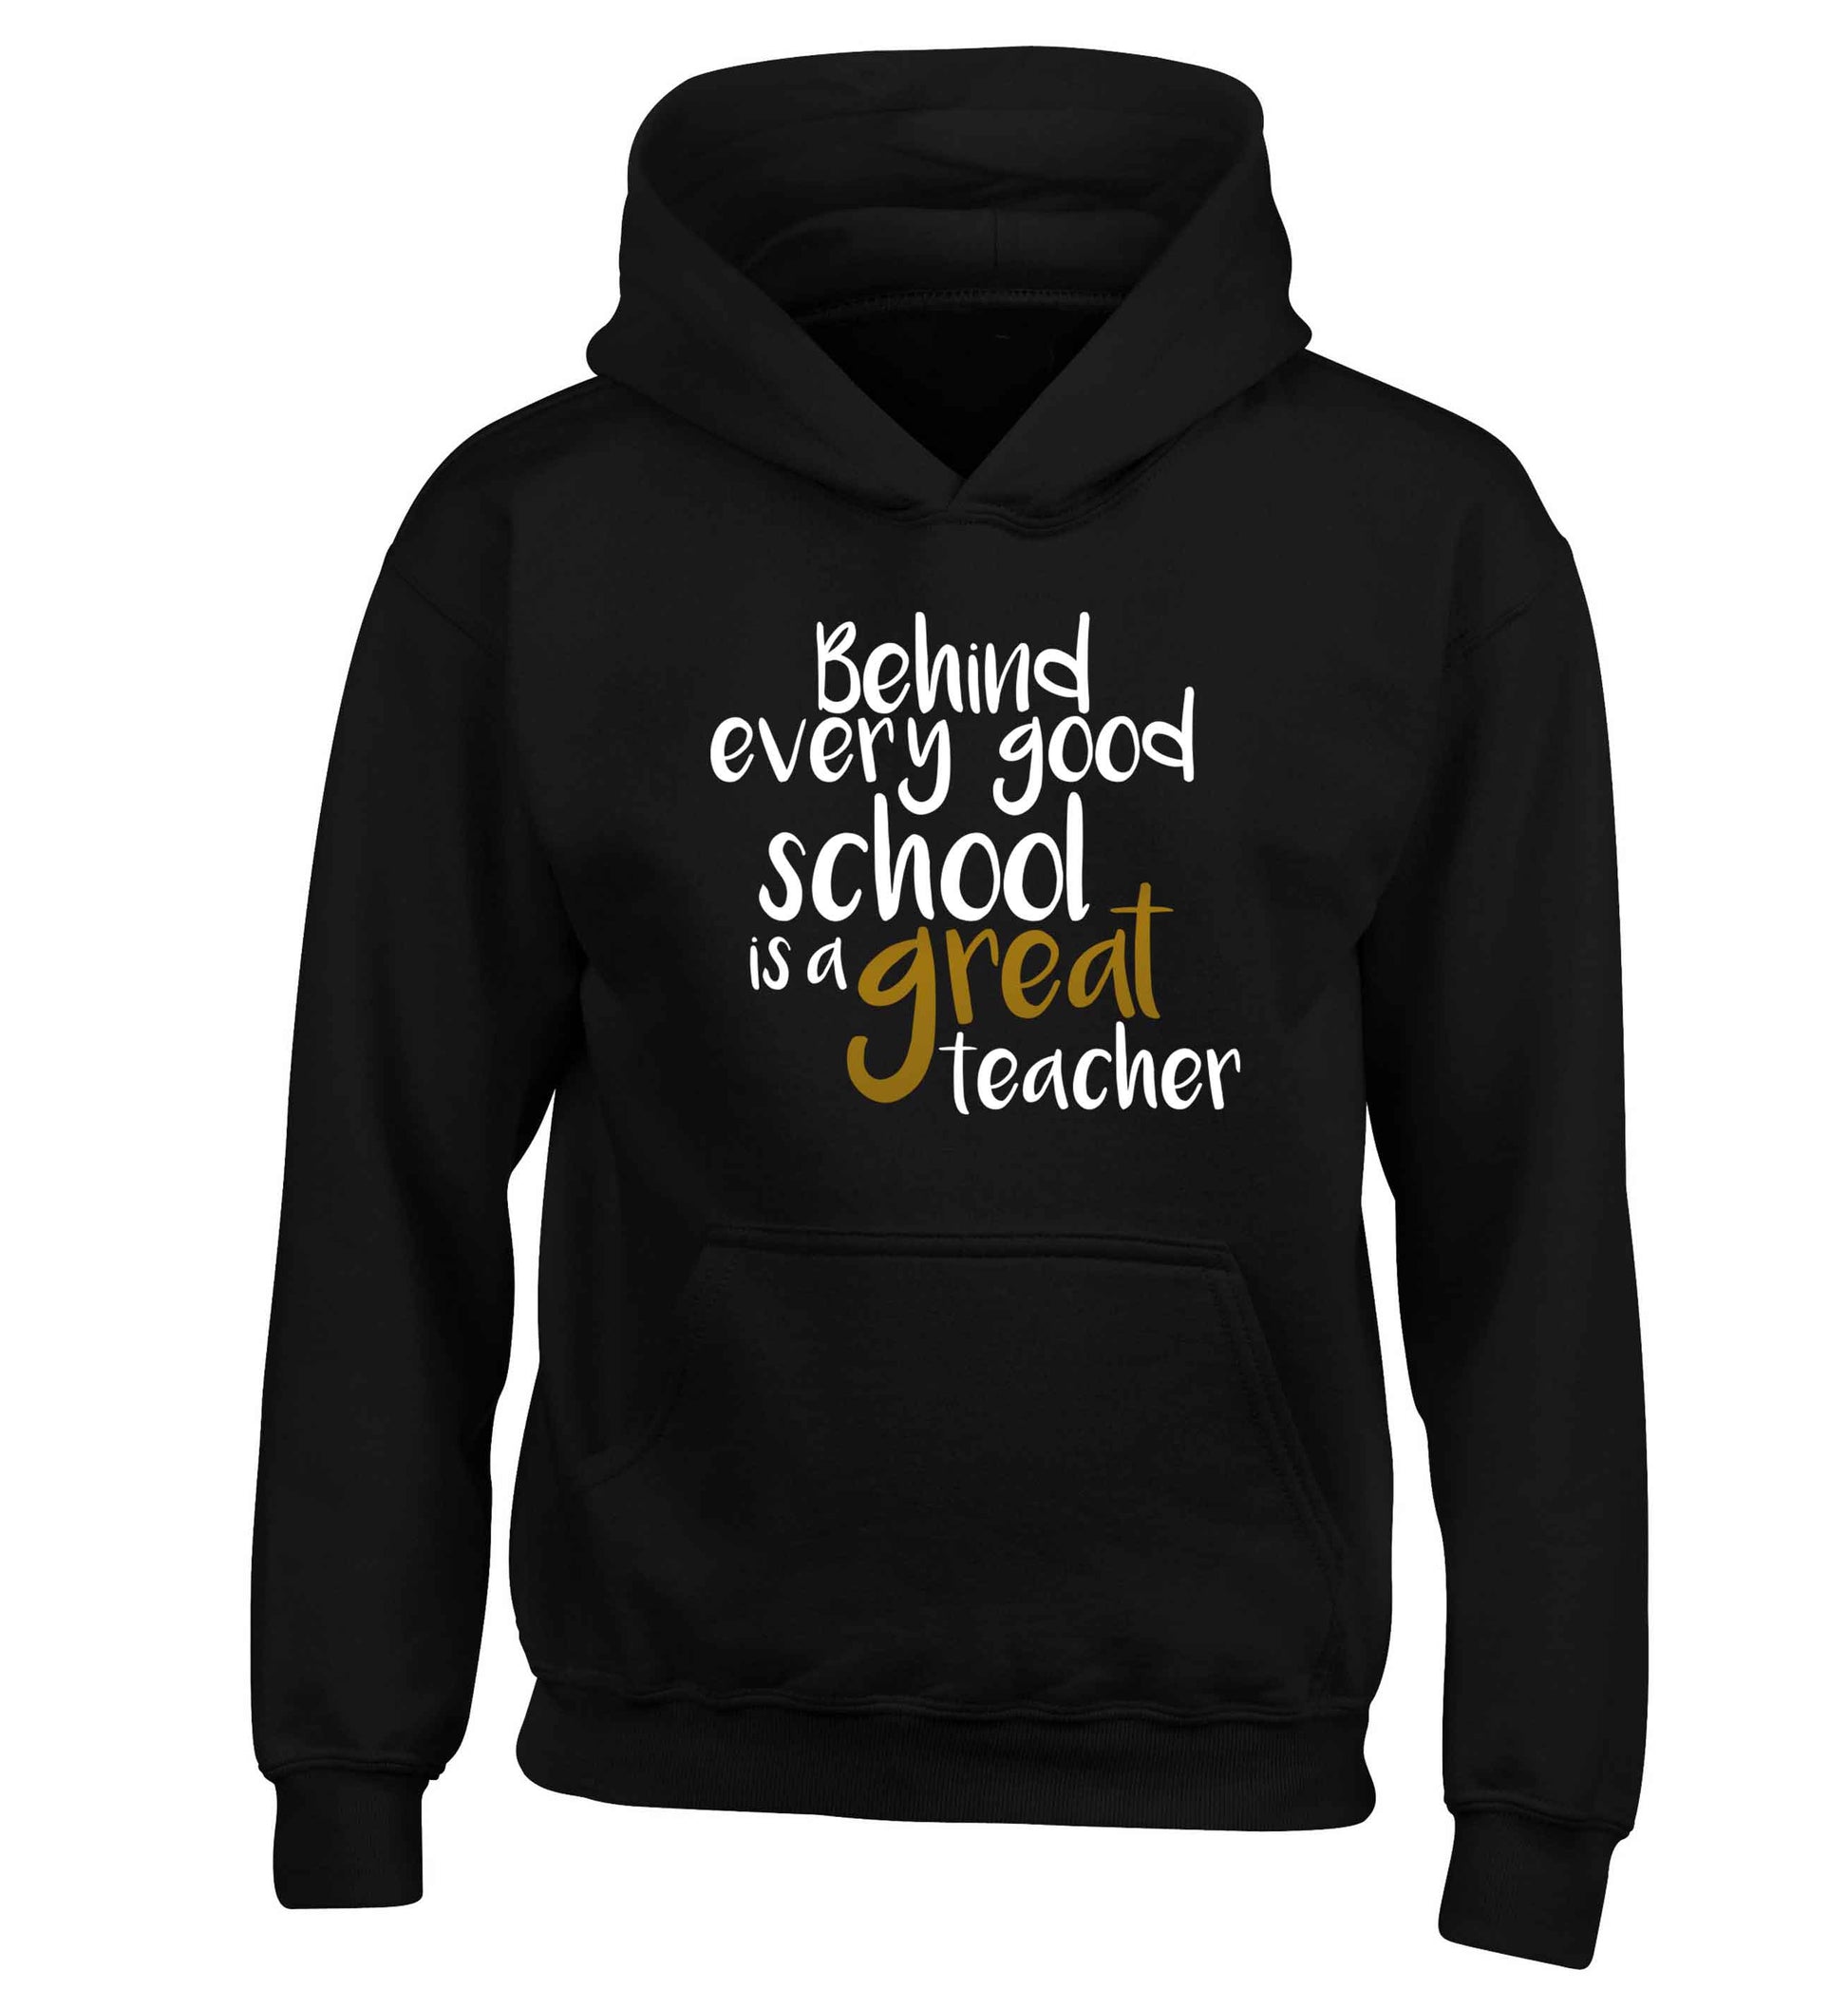 Behind every good school is a great teacher children's black hoodie 12-13 Years